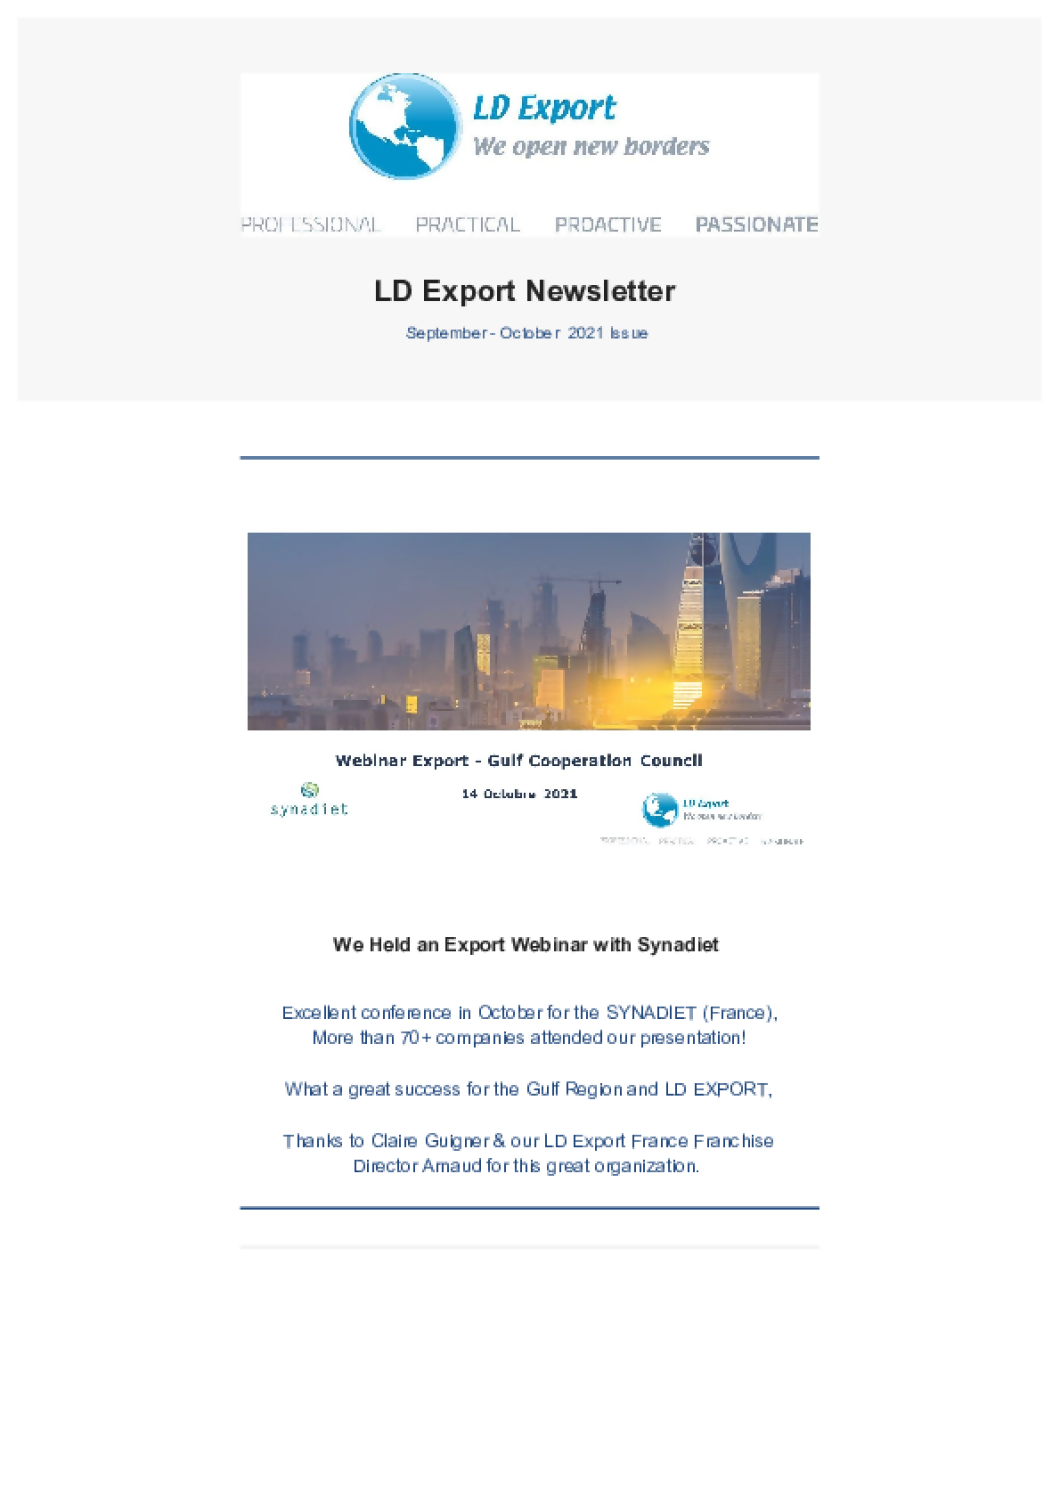 LD Export September - October Newsletter 